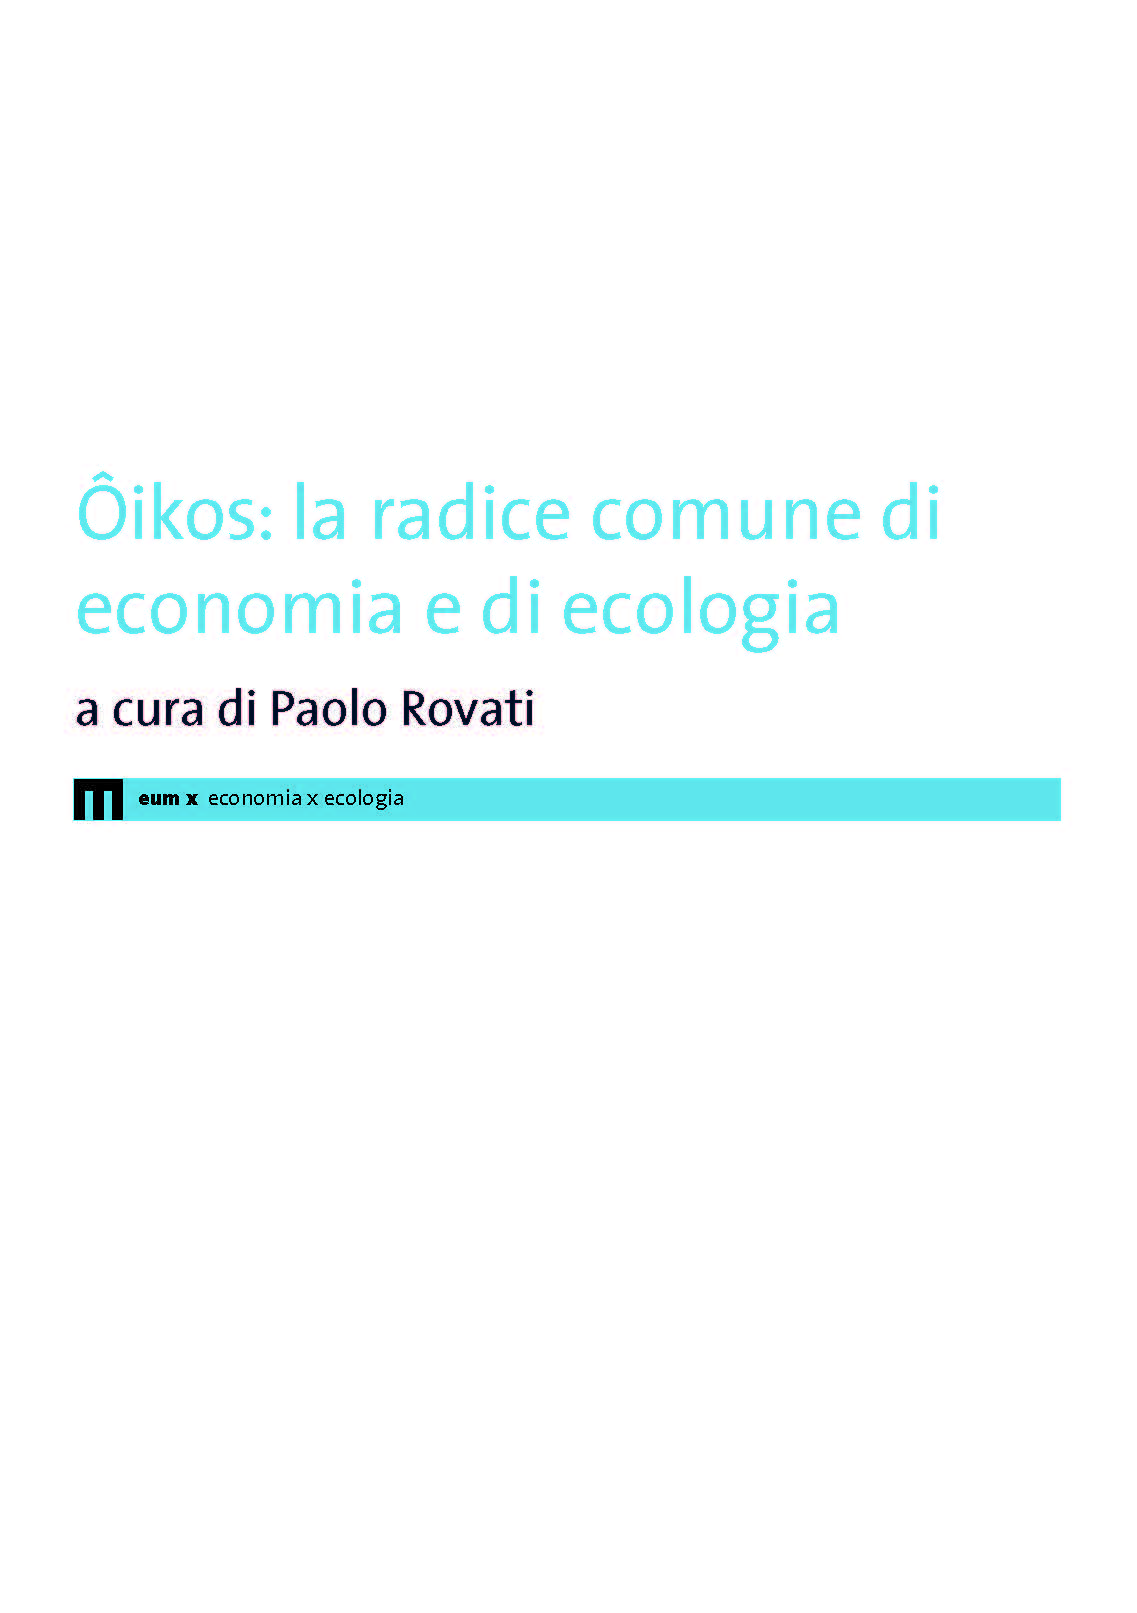 Ôikos: la radice comune di economia e di ecologia